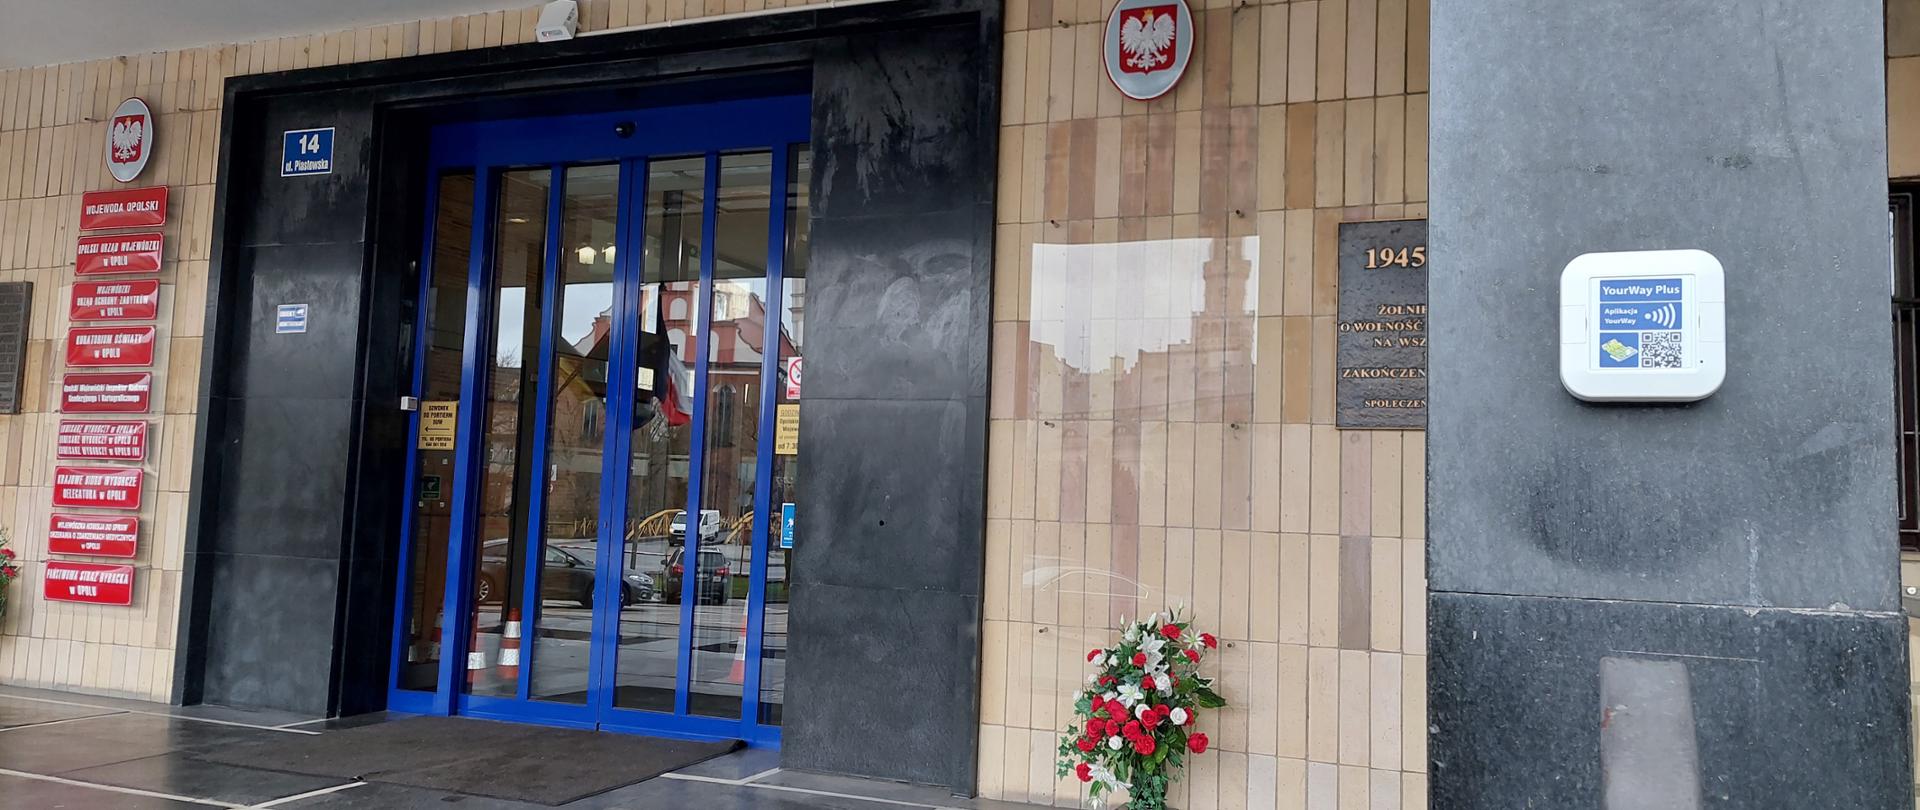 Na zdjęciu znajduje się wejście główne do budynku Opolskiego Urzędu Wojewódzkiego oraz zainstalowany obok nadajnik YourWay. YourWay jest to system wspierający osoby niewidome oraz słabowidzące w łatwiejszym poruszaniu się w przestrzeni publicznej. 